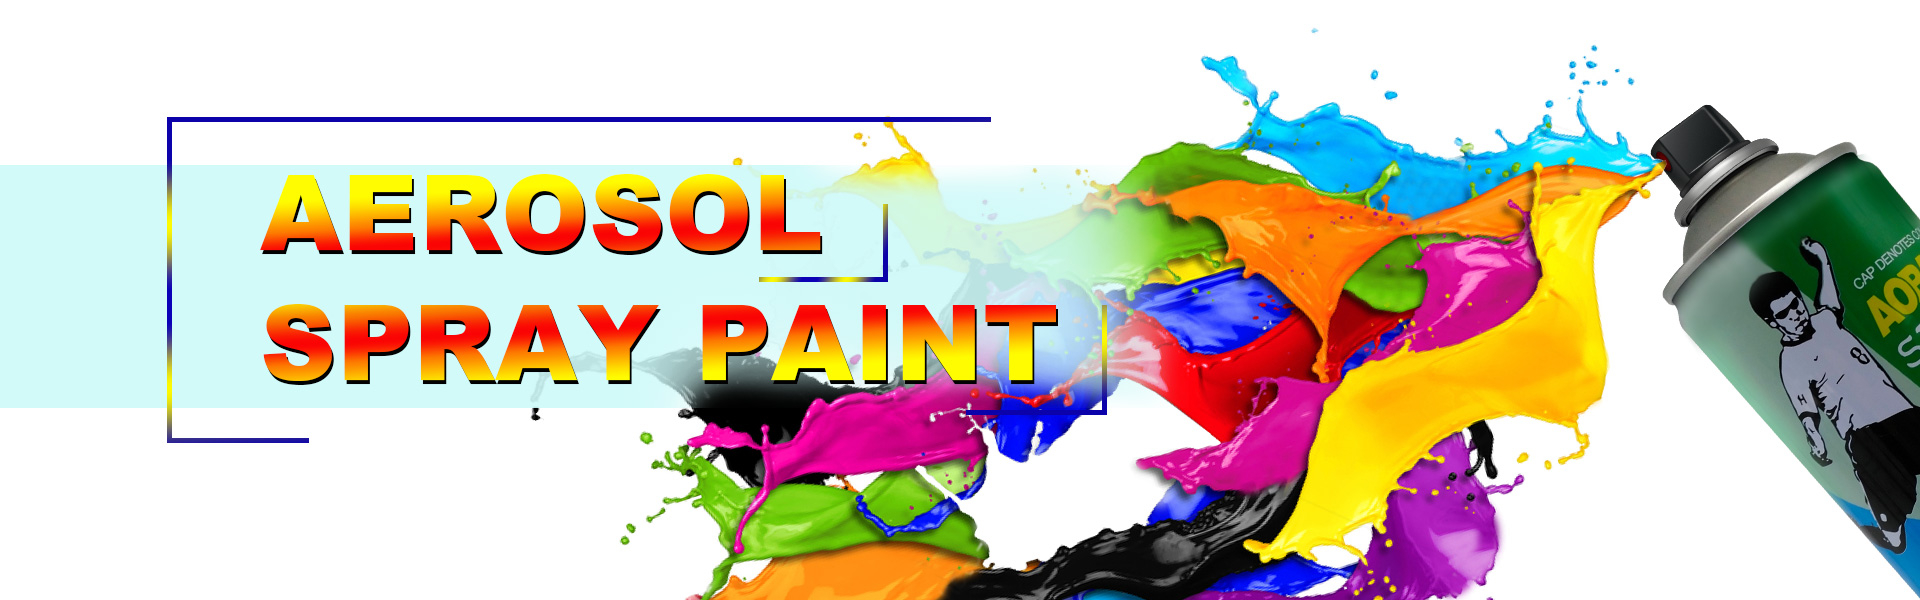 Spray denieve, pulverización de pintura, Producto de cuidado de automóviles,Huizhou Baishijie Festive Products Co., Ltd.